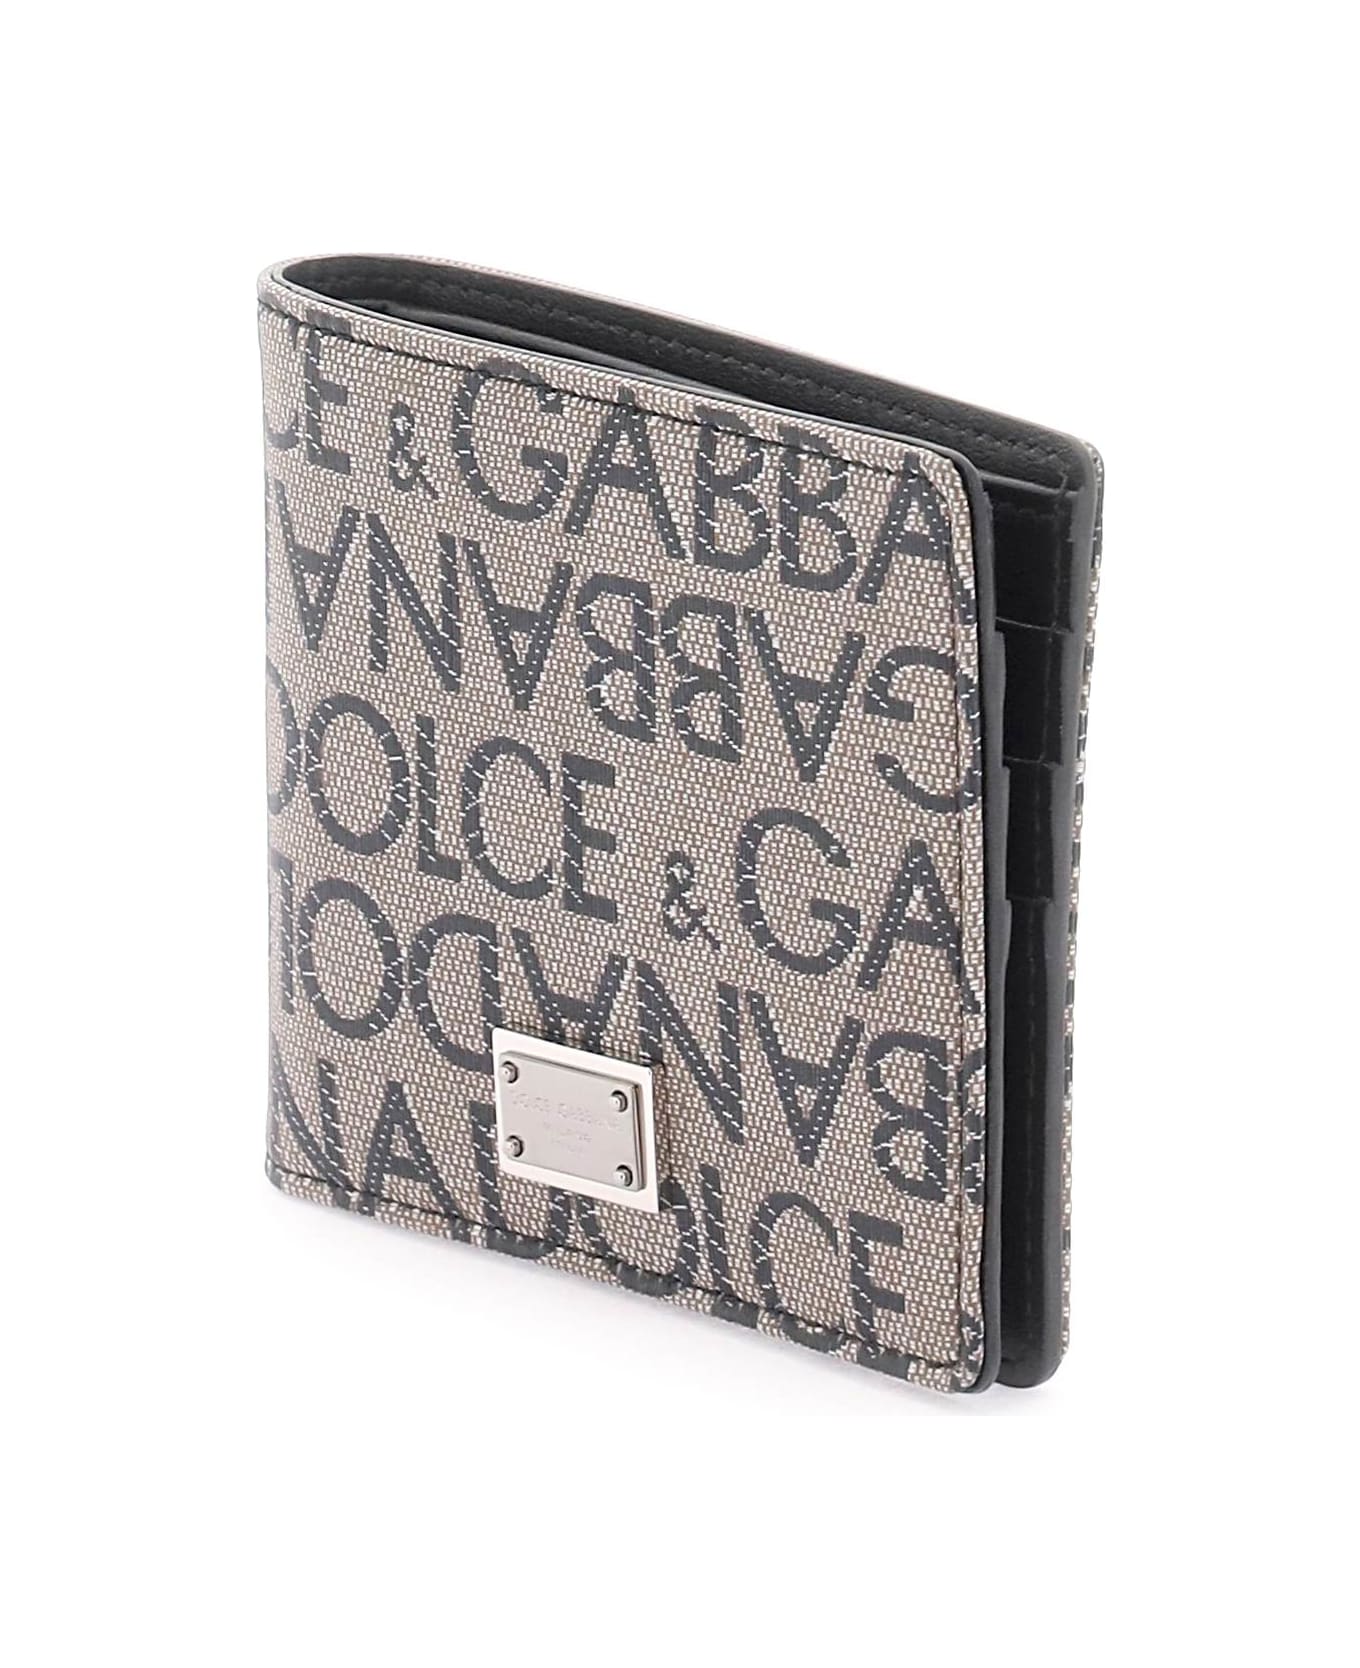 Dolce & Gabbana Jacquard Wallet - Brown / Black 財布